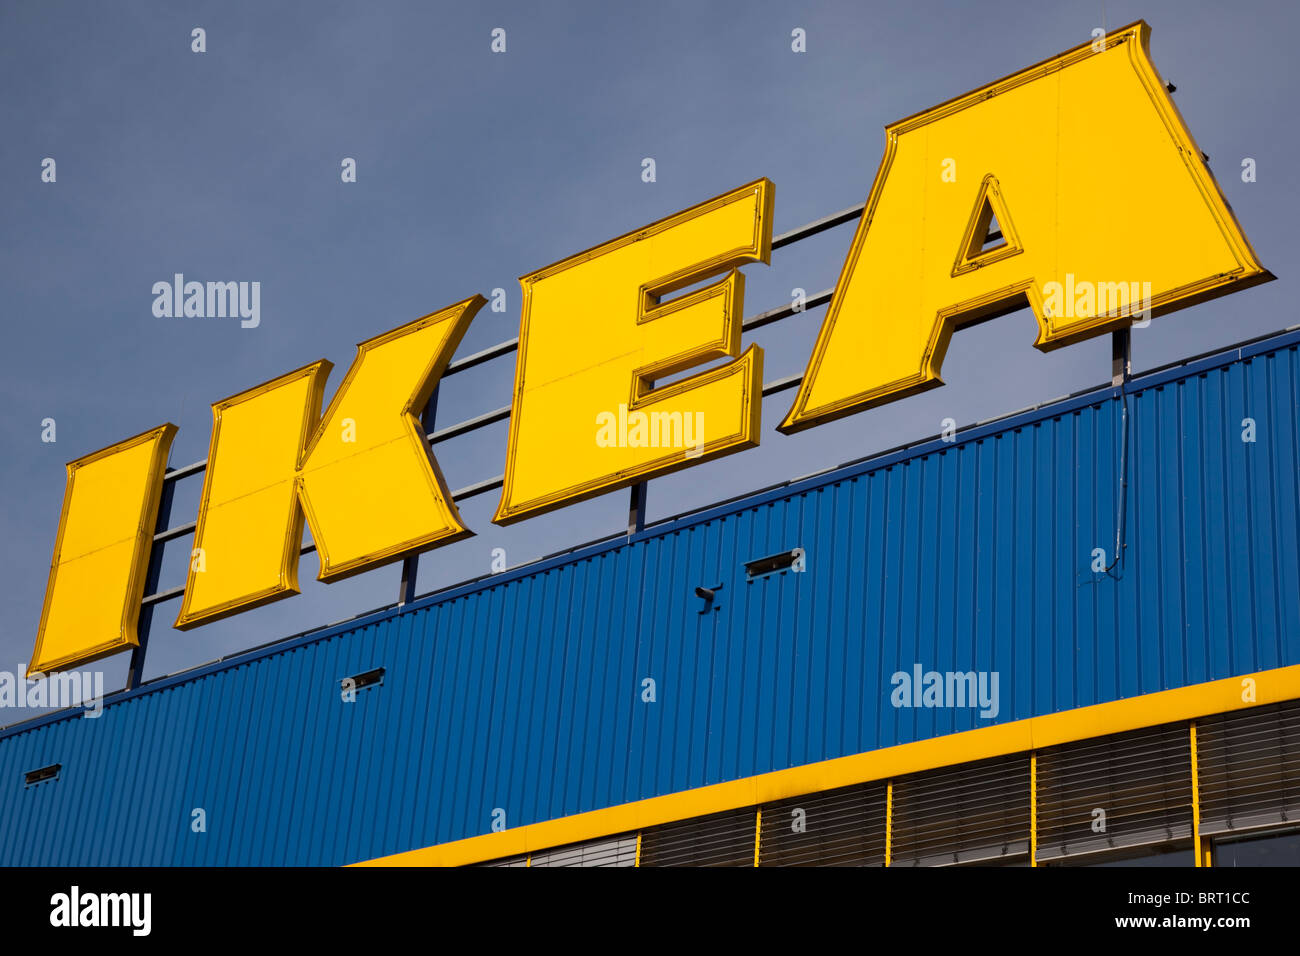 IKEA Möbelhaus, Essen, Ruhrgebiet, Nordrhein-Westfalen, Deutschland, Europa  Stockfotografie - Alamy